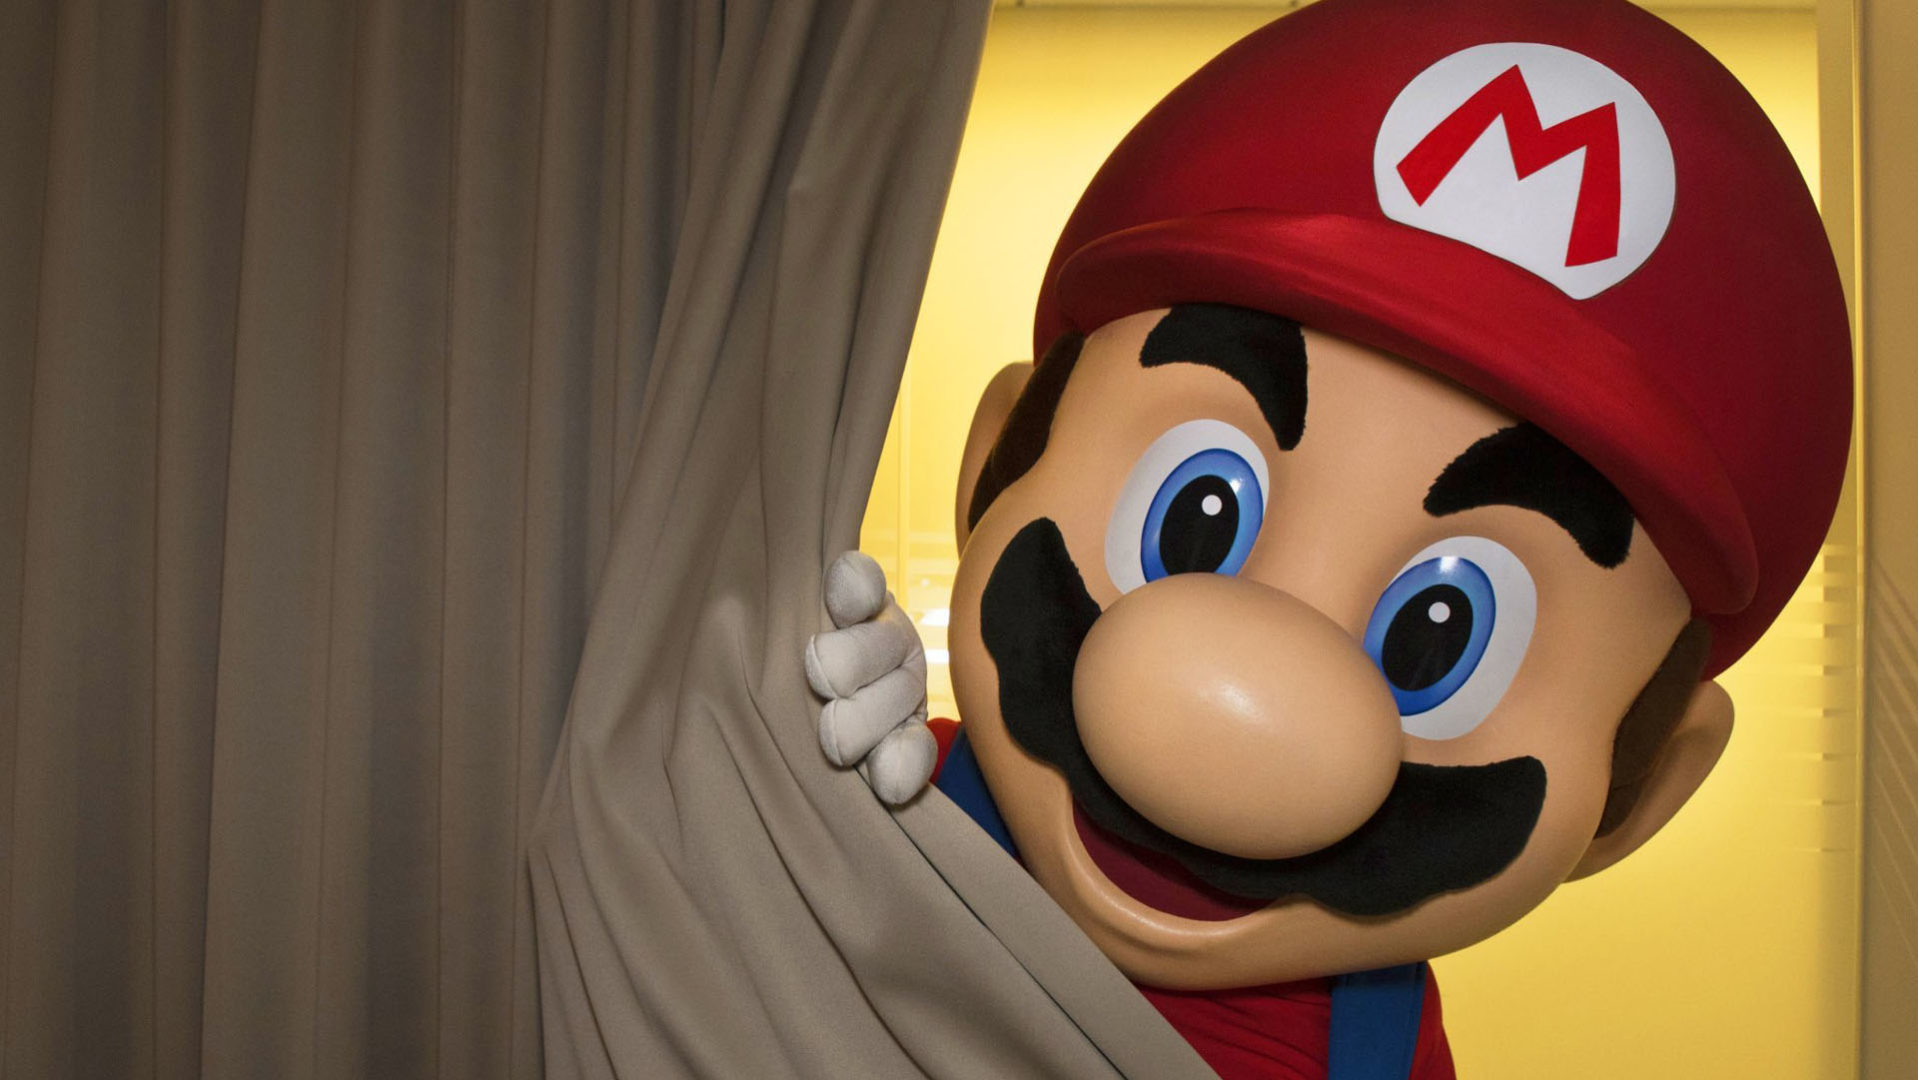 Nintendo Switch Super Mario